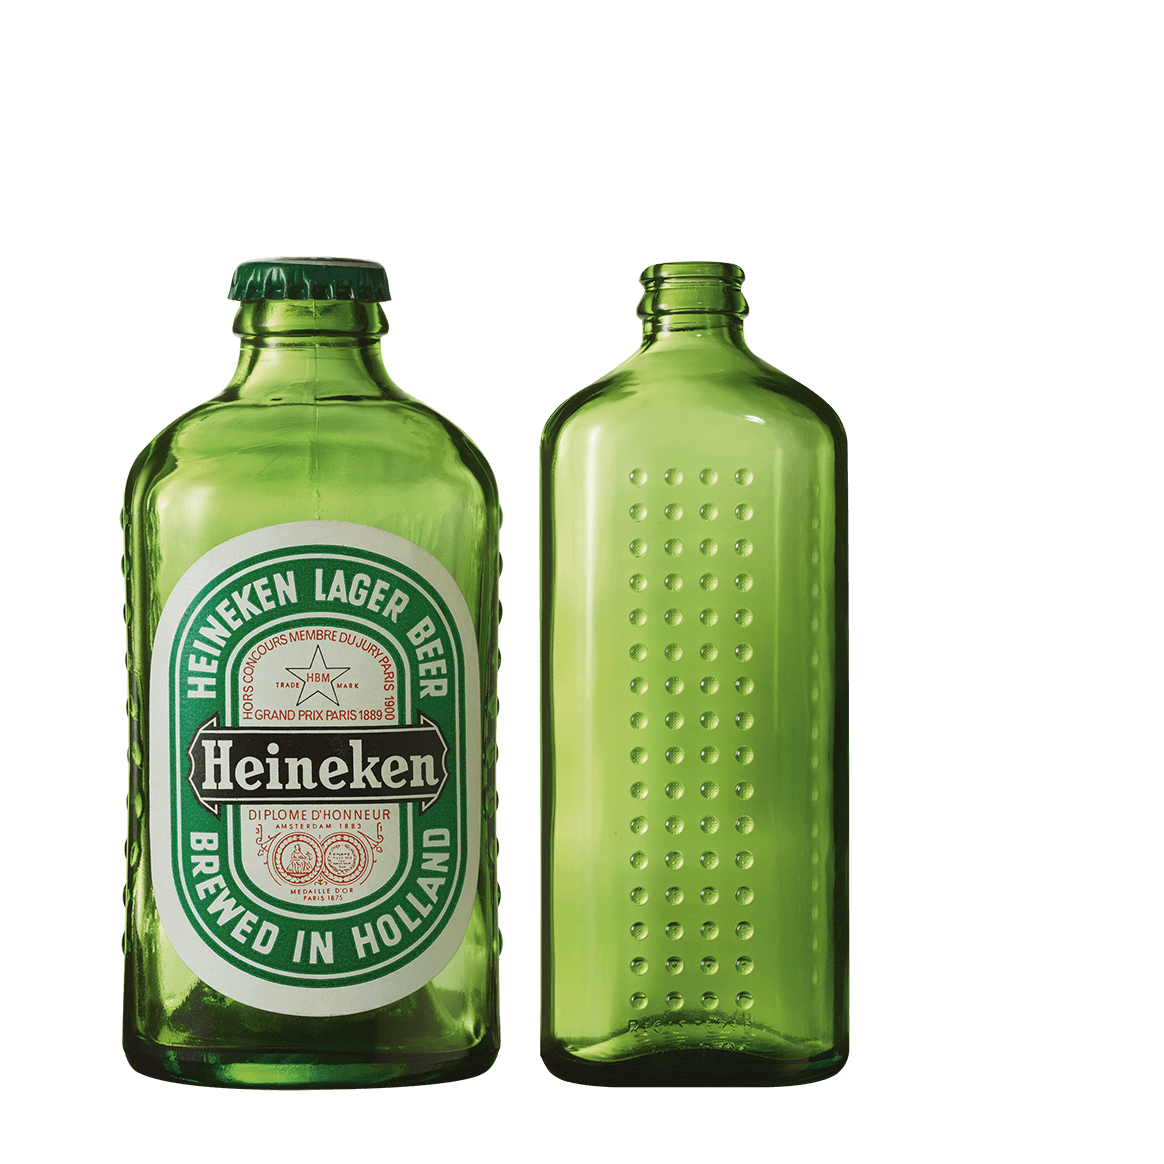 ハイネケン®の歴史を紐解く | ハイネケンのストーリー | Heineken.com